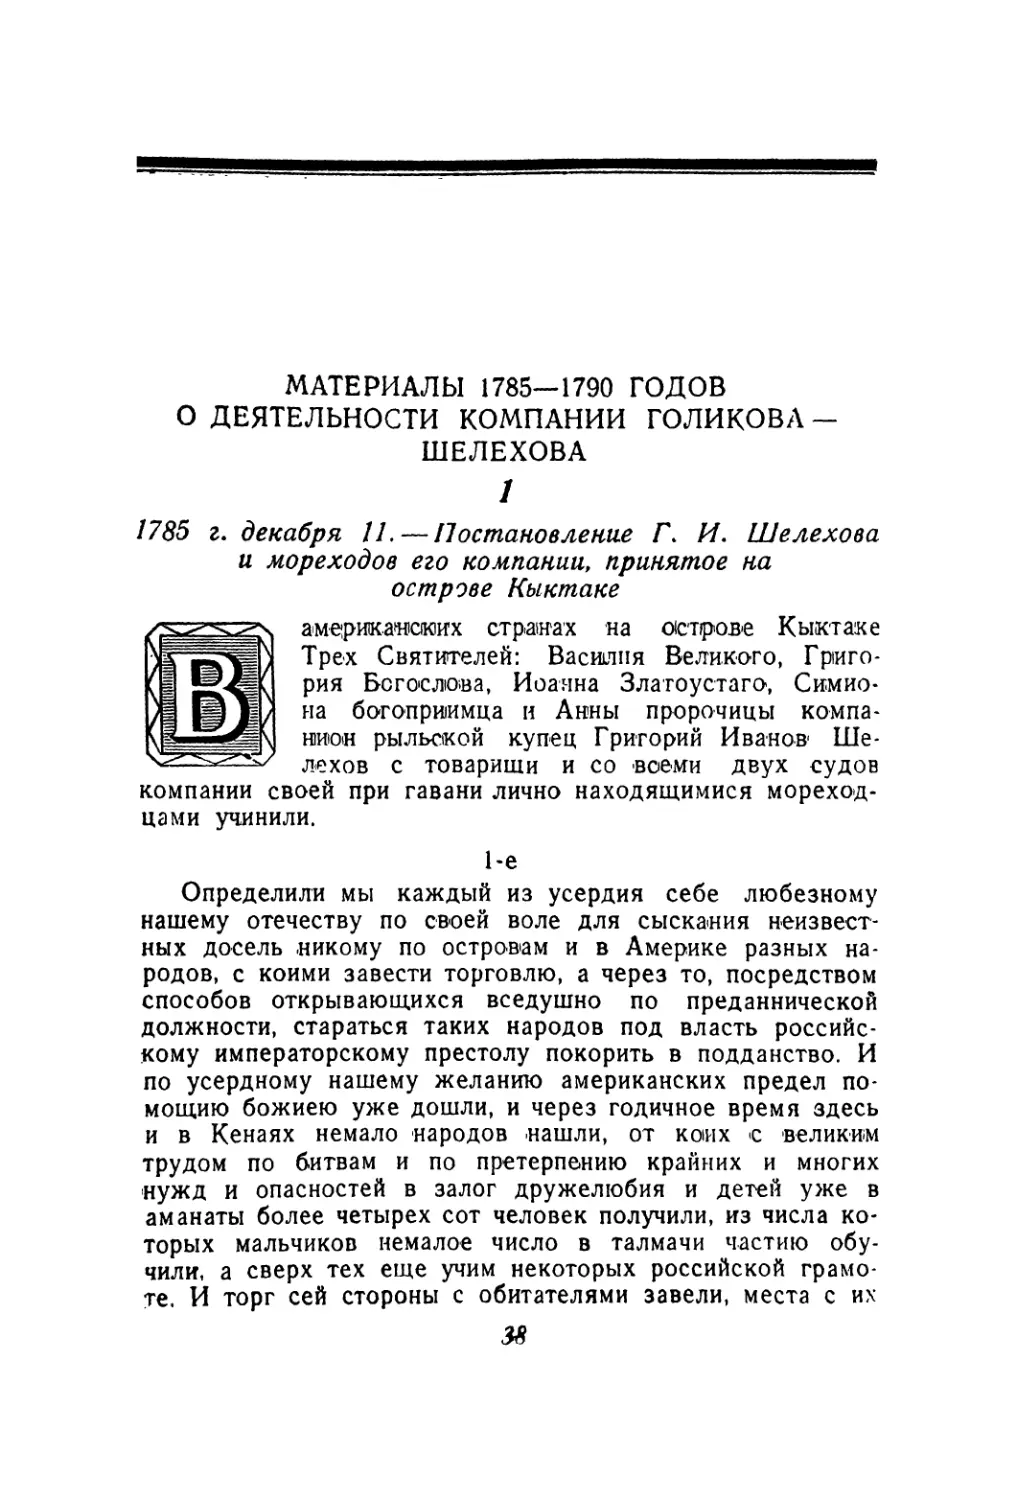 Материалы 1785—1790 годов о деятельности компании Голикова—Шелехова